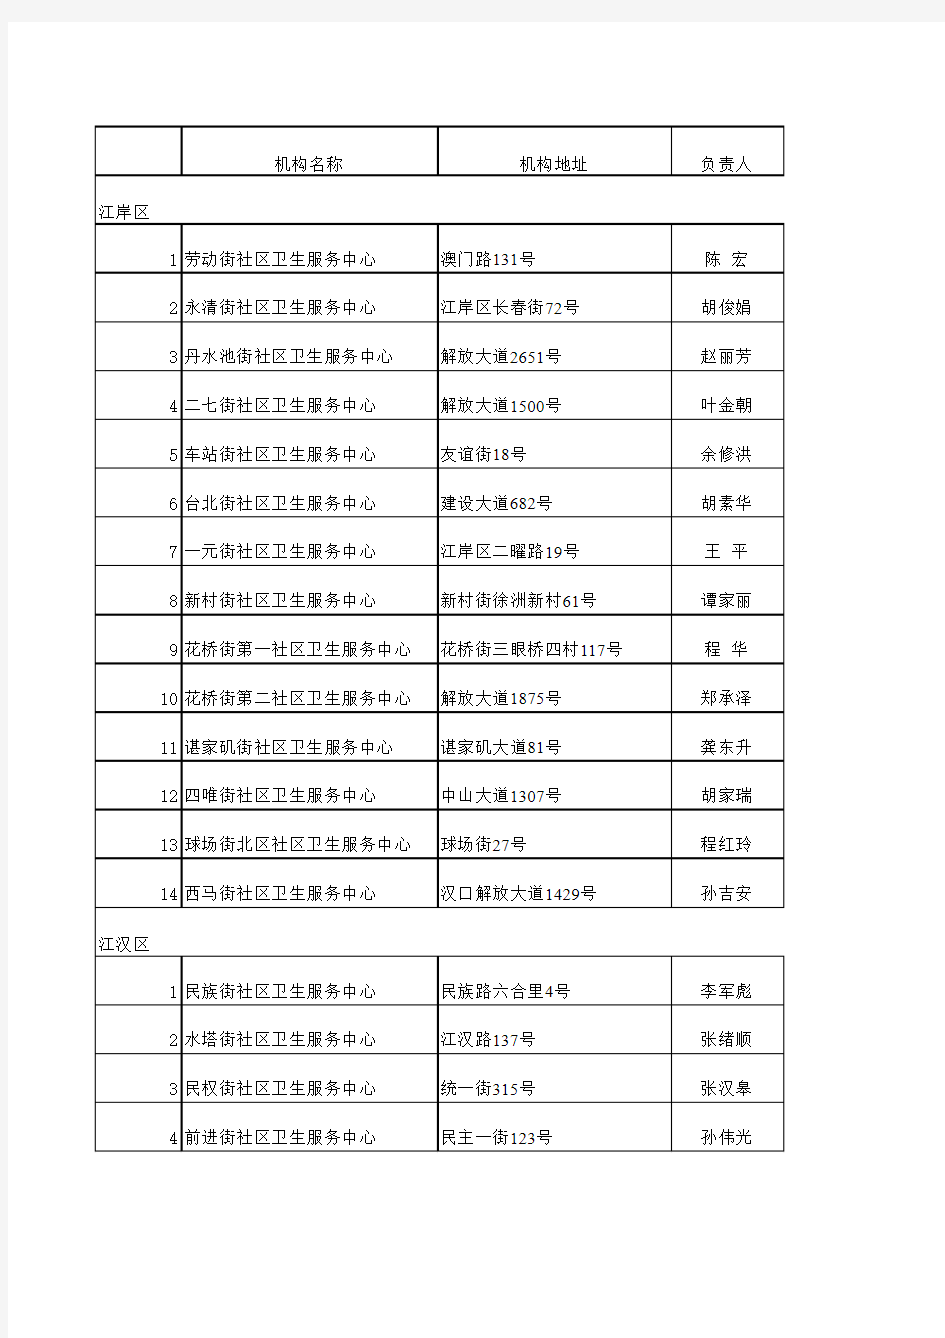 武汉社区卫生服务中心联系表